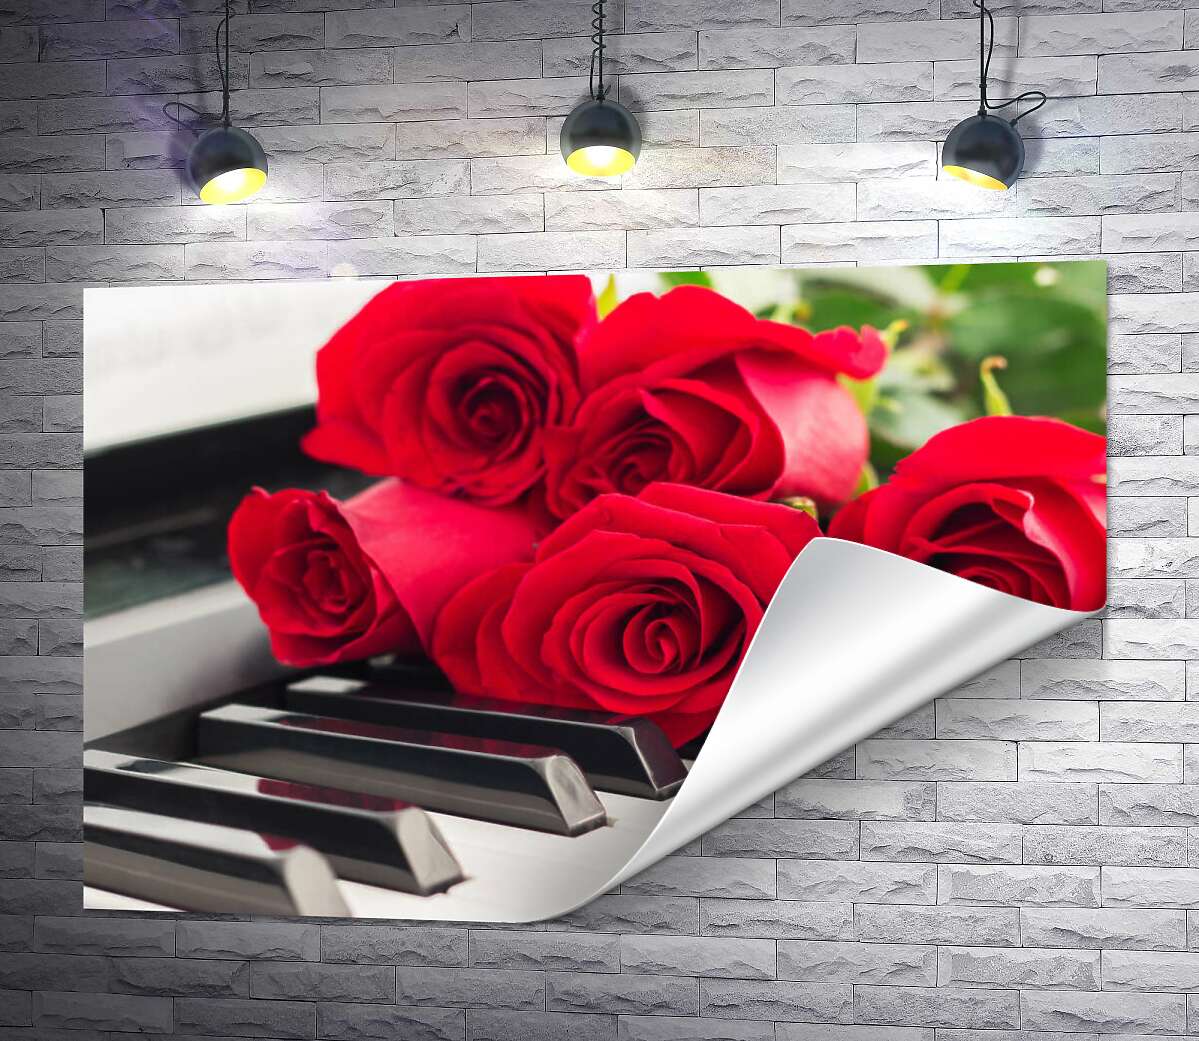 друк Ніжні пелюстки троянд торкаються мелодійних клавіш білого фортепіано